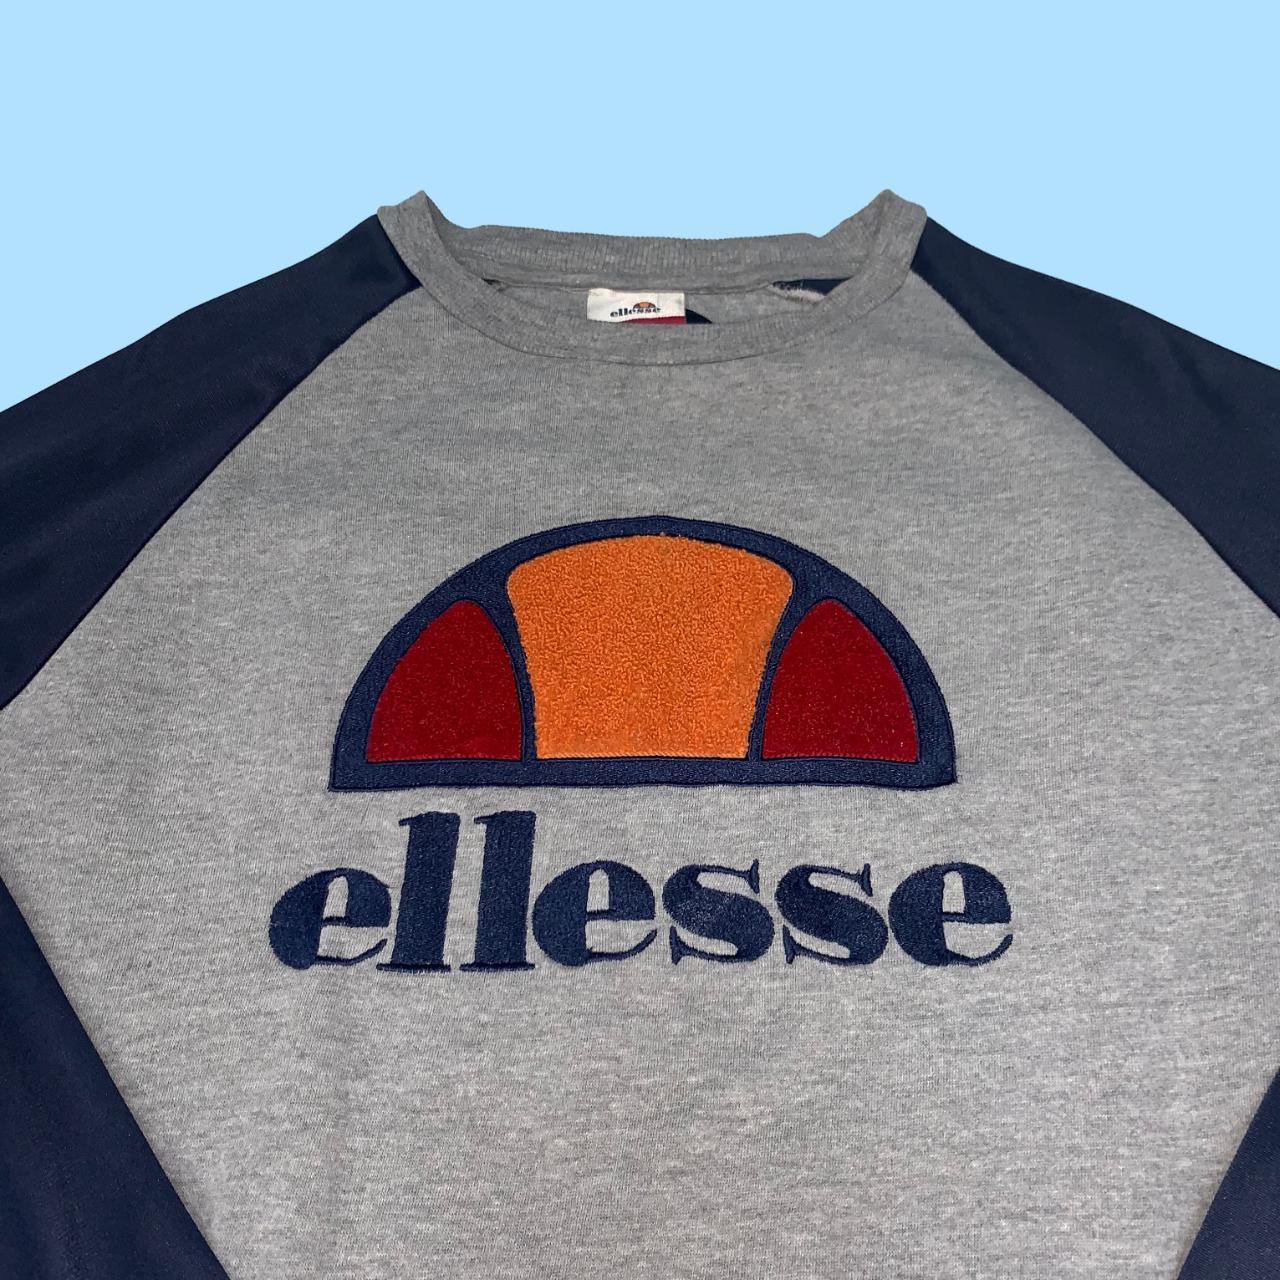 Ellesse Men's Grey and Navy Sweatshirt with Spellout... - Depop